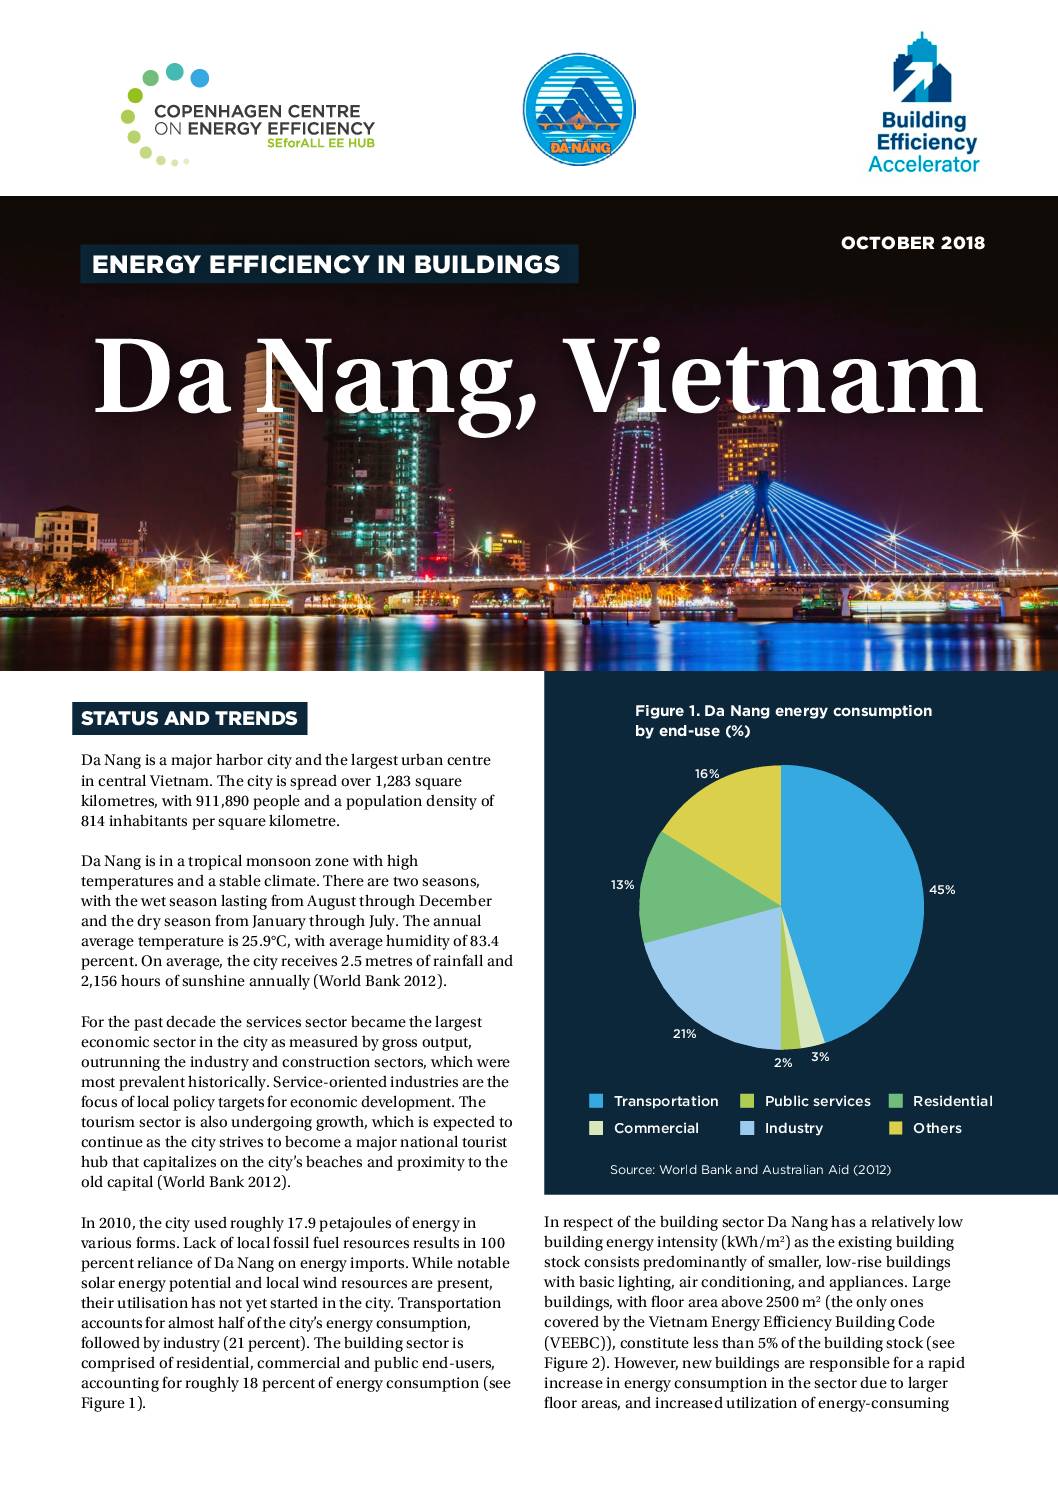 Energy Efficiency in Buildings: Da Nang, Vietnam